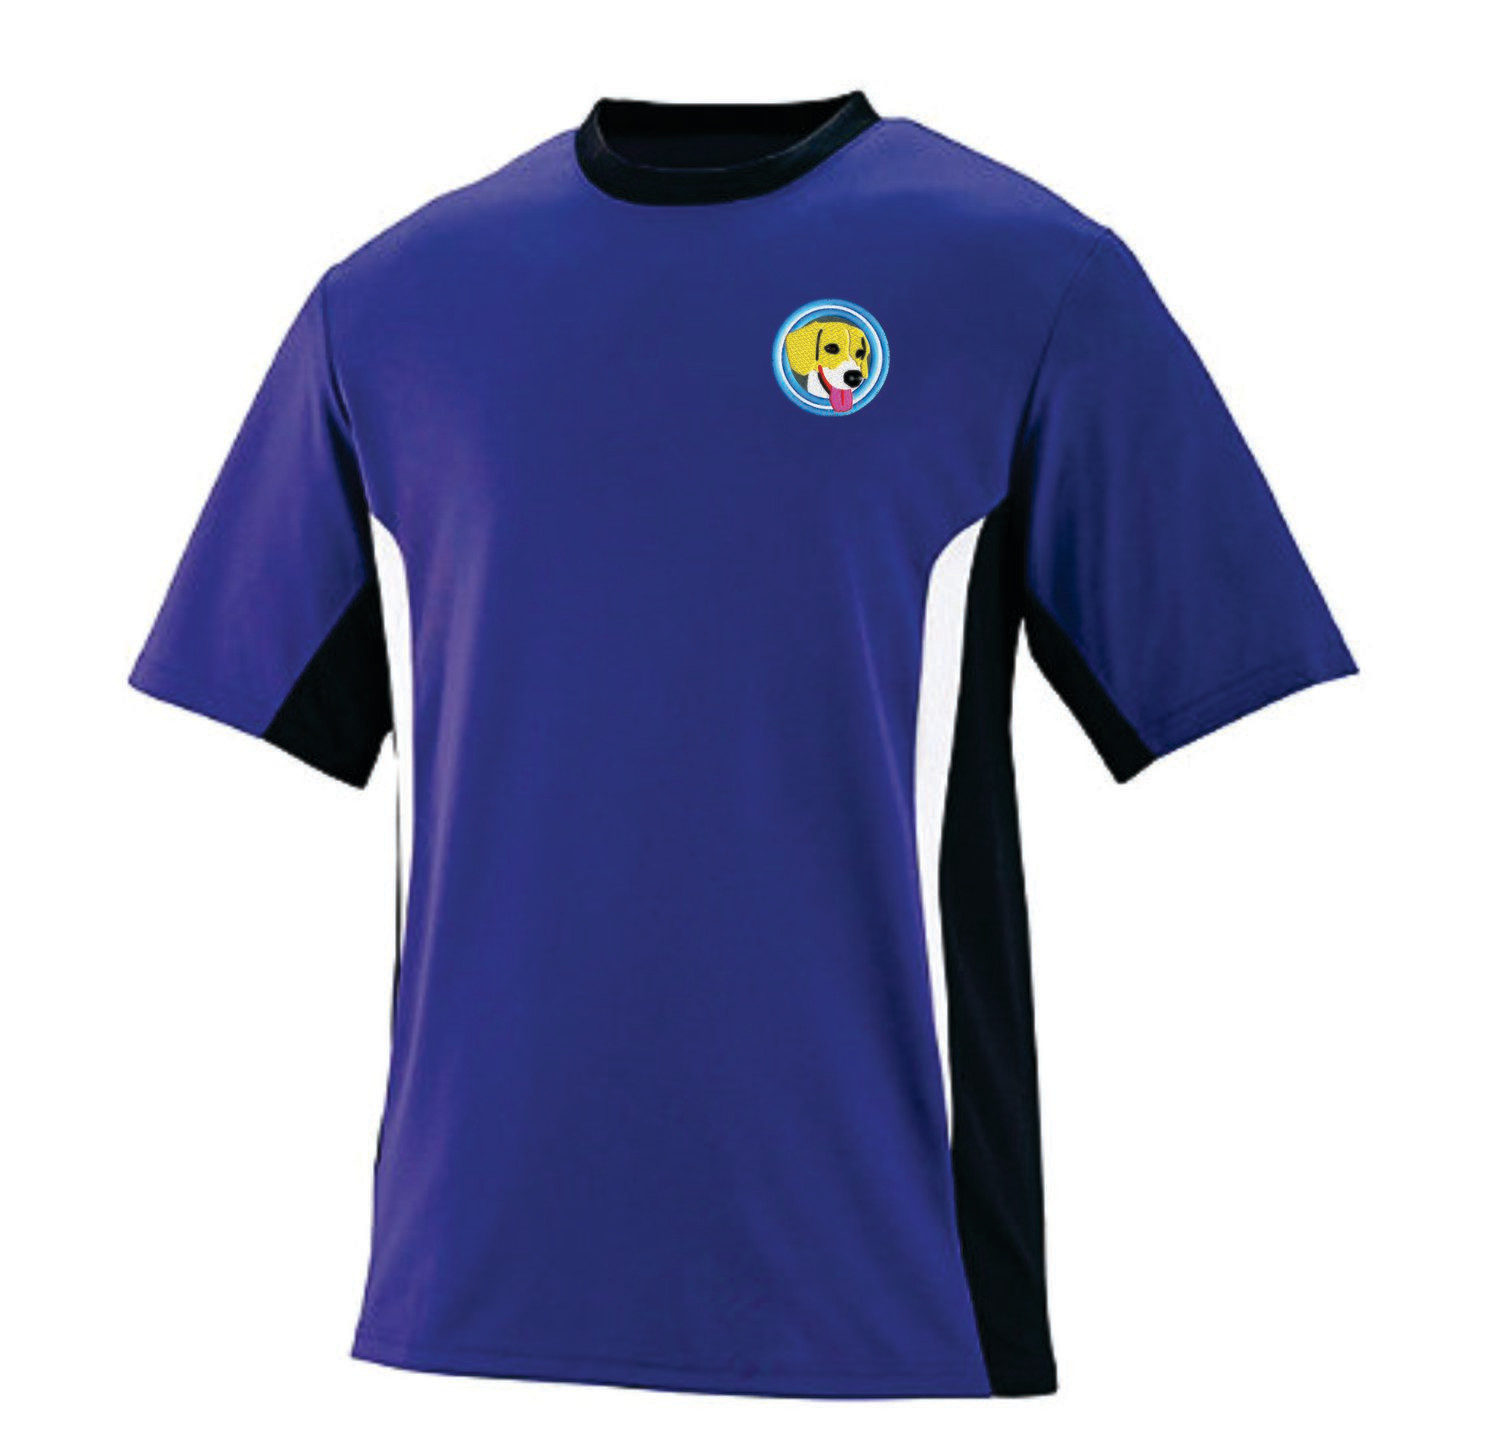 Camisetas de Color Tres Tonos Unisex Microfibra (Dry fit) con Bordado